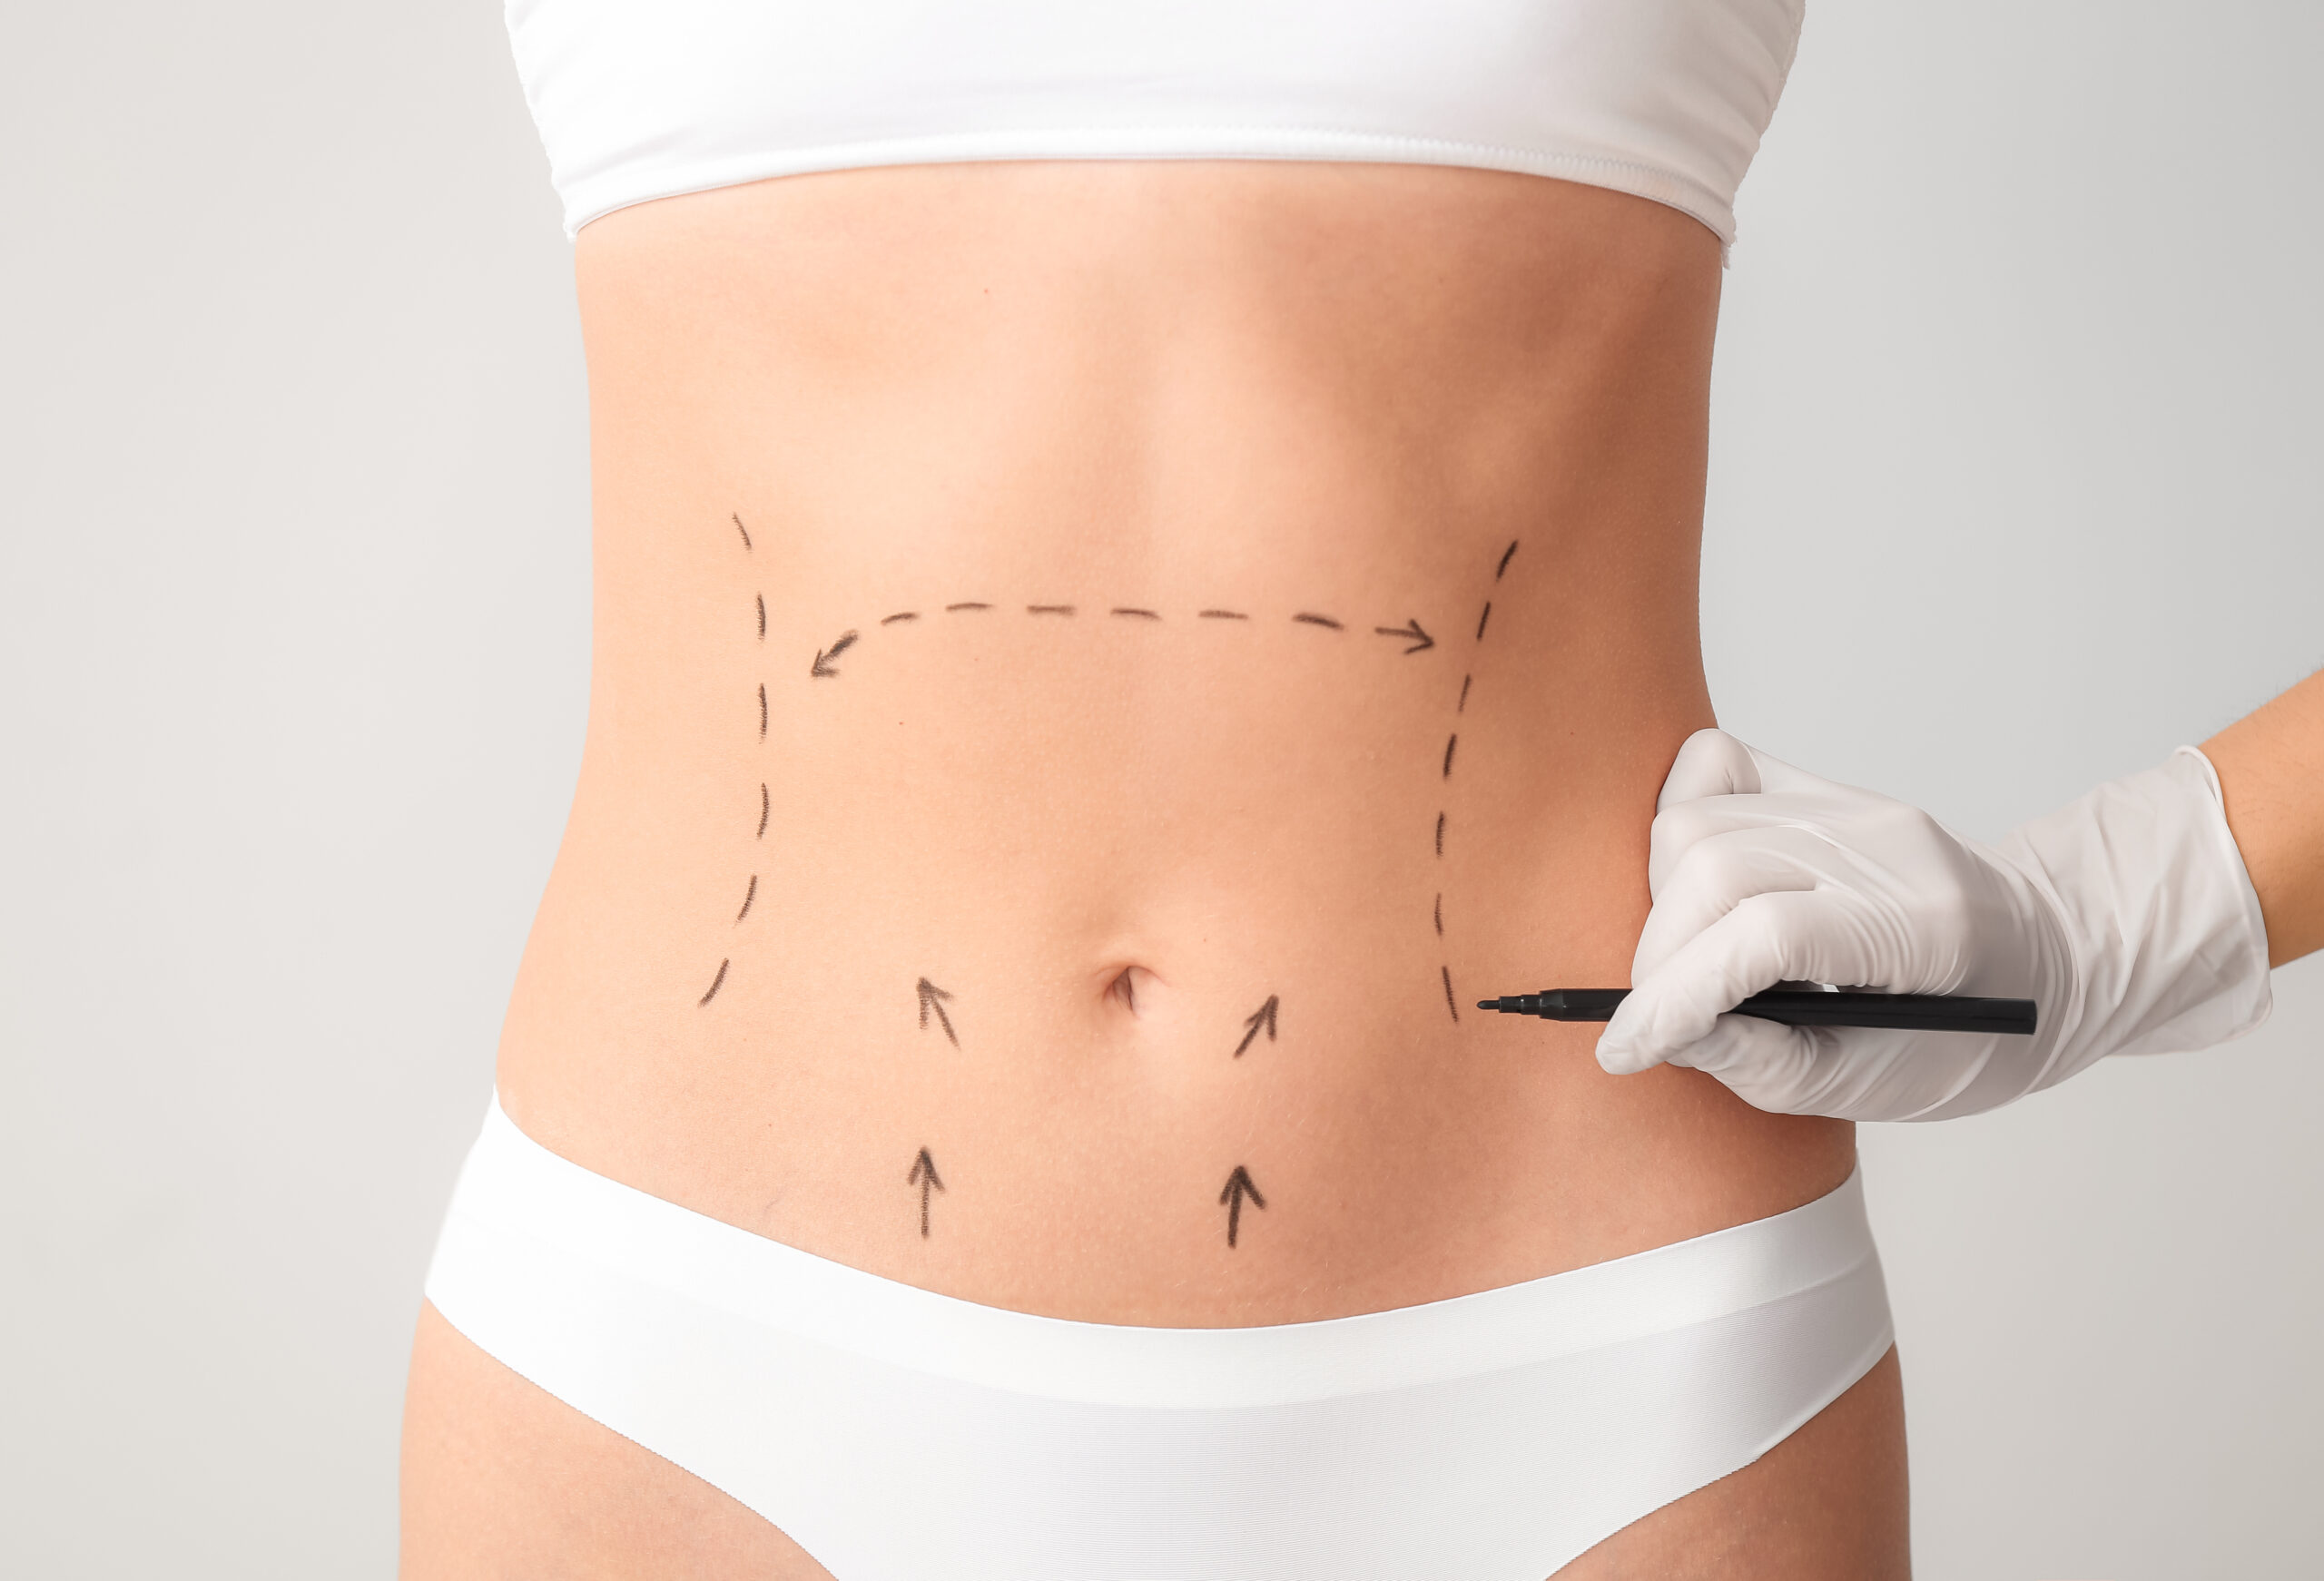 Plastic surgeon applying marks on female body against light back